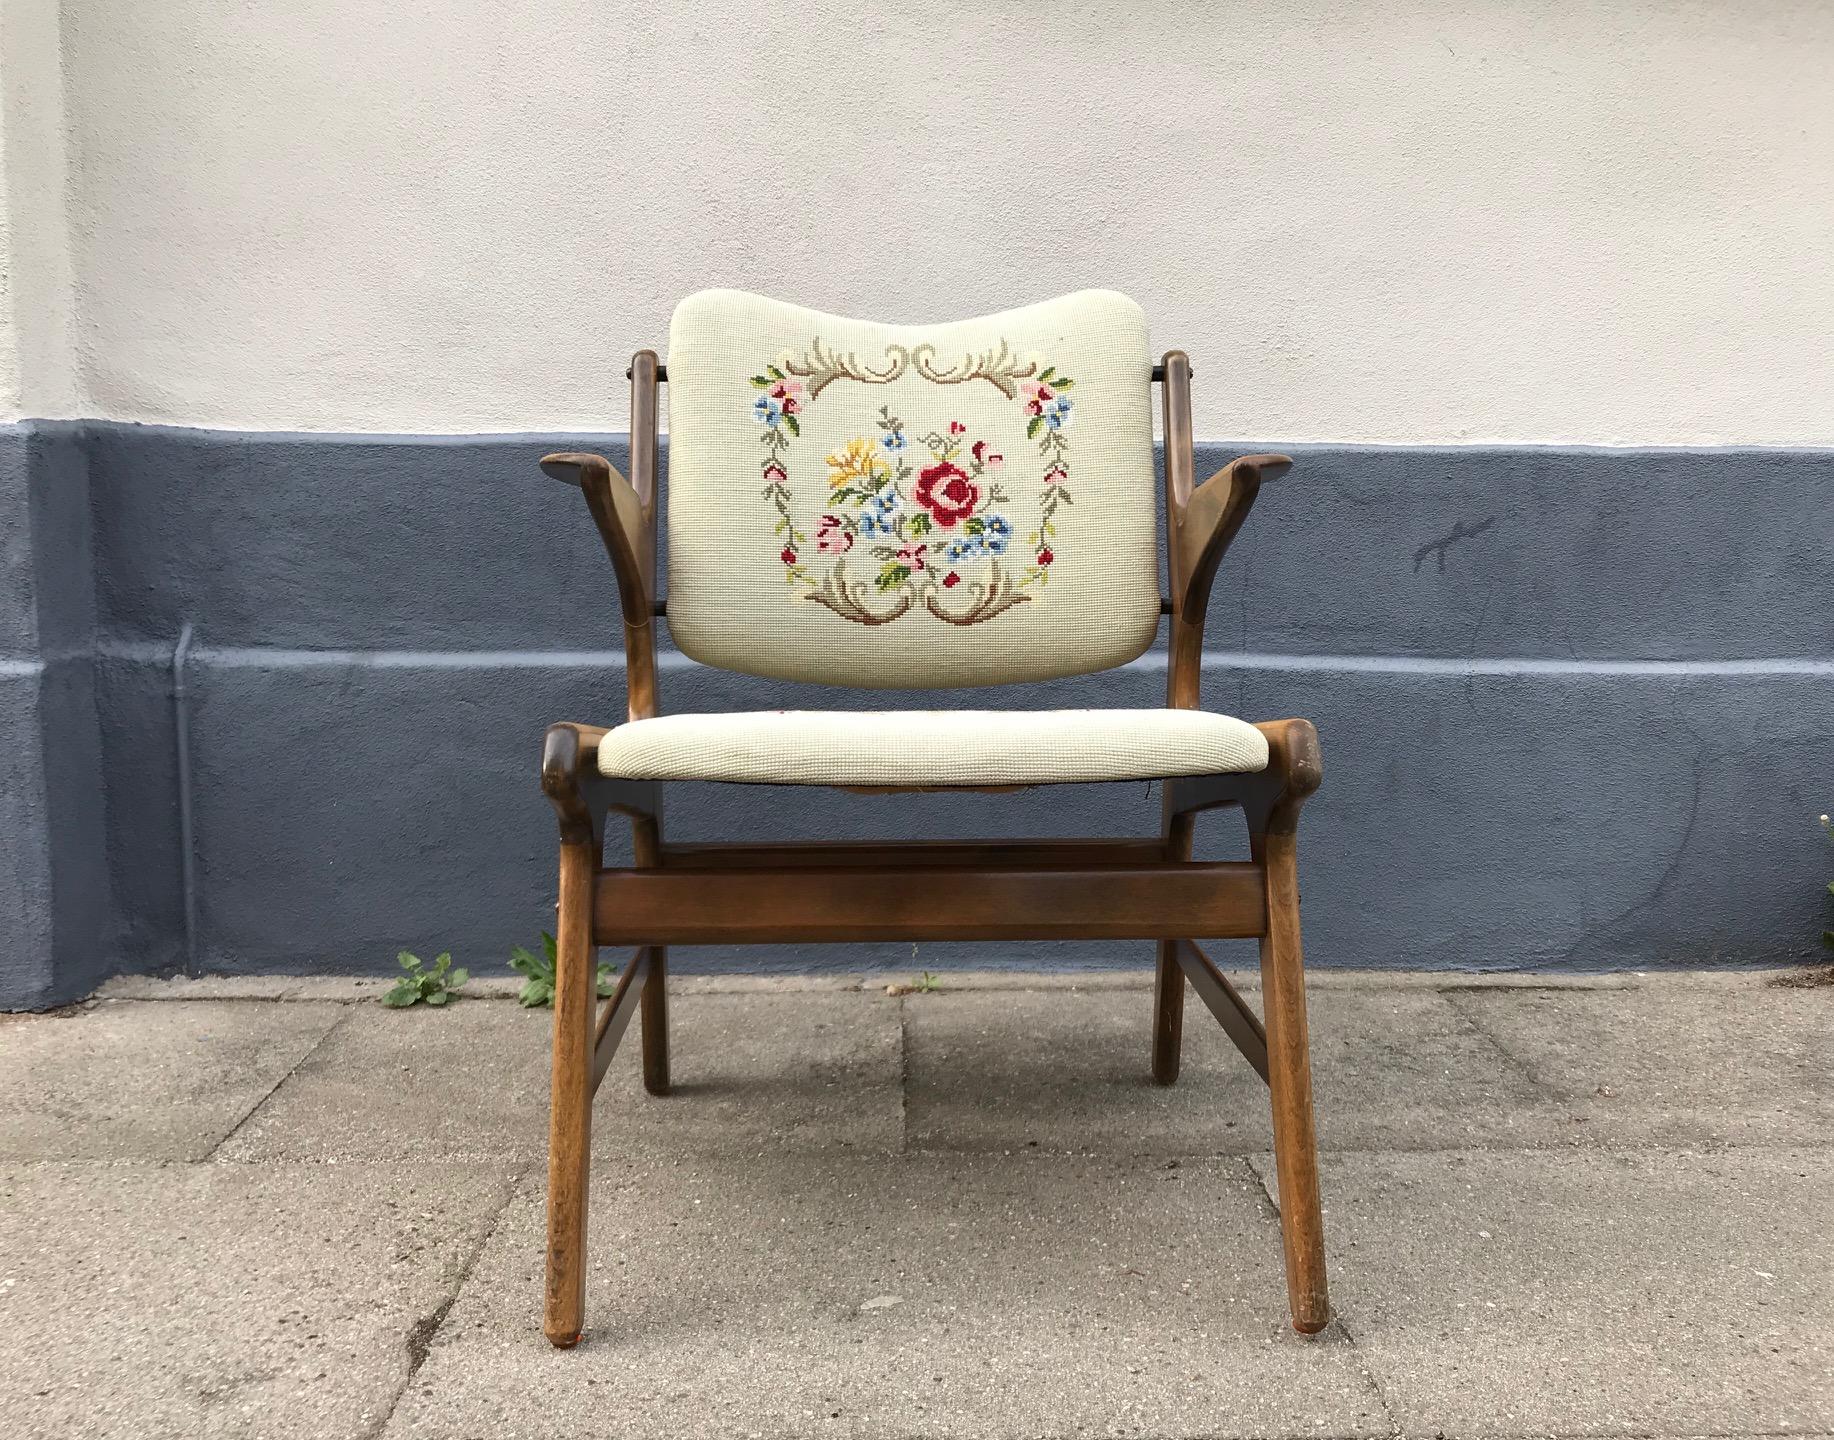 Petit fauteuil en chêne teinté. Rembourrage en laine brodée à la main. Il a été conçu par A. Hovmand Olsen au début des années 1950 et fabriqué par A.R. Klingeberg & Søn au Danemark. Il est facile à rembourrer si le tissu actuel est peu attrayant.